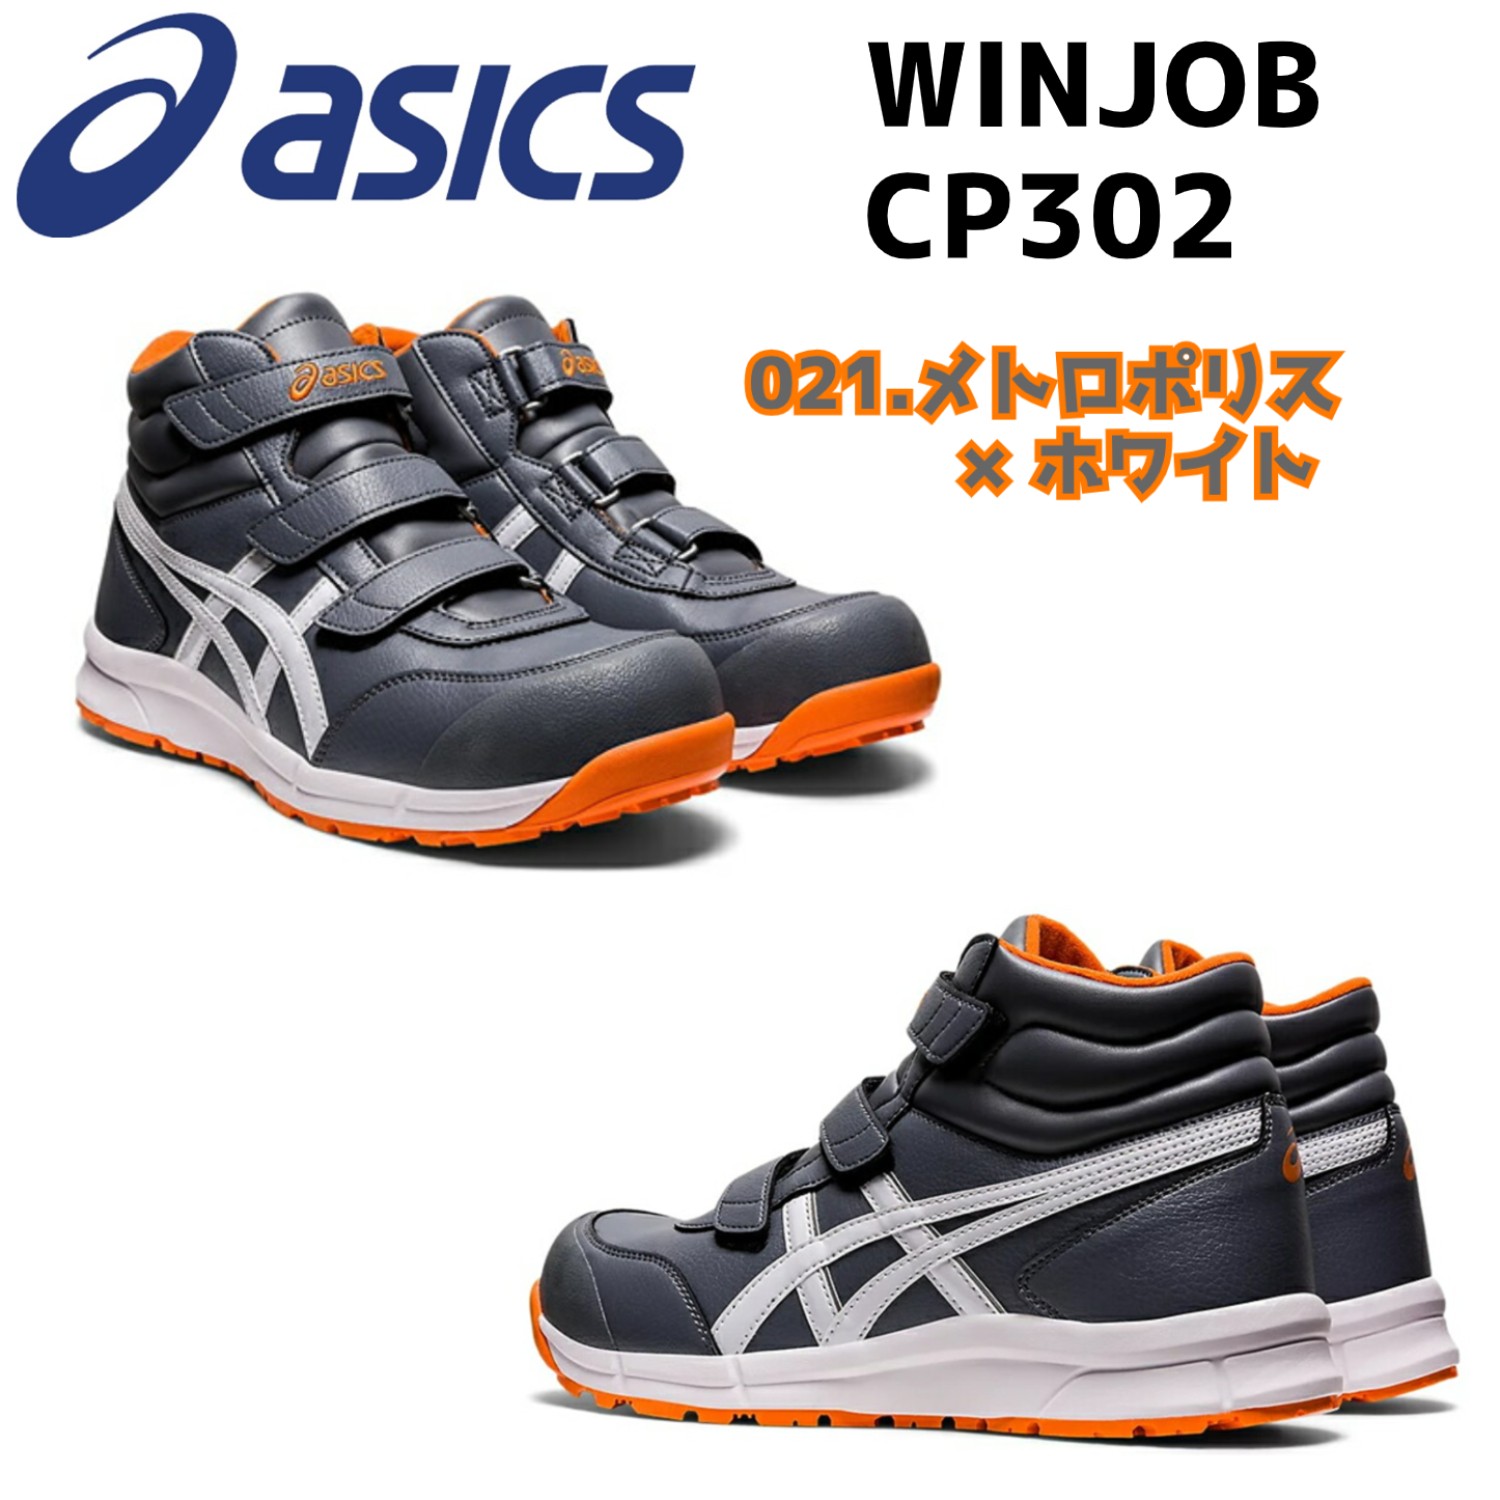 【期間限定価格】アシックス 安全靴  ハイカット asics WINJOB CP302 マジックテー...